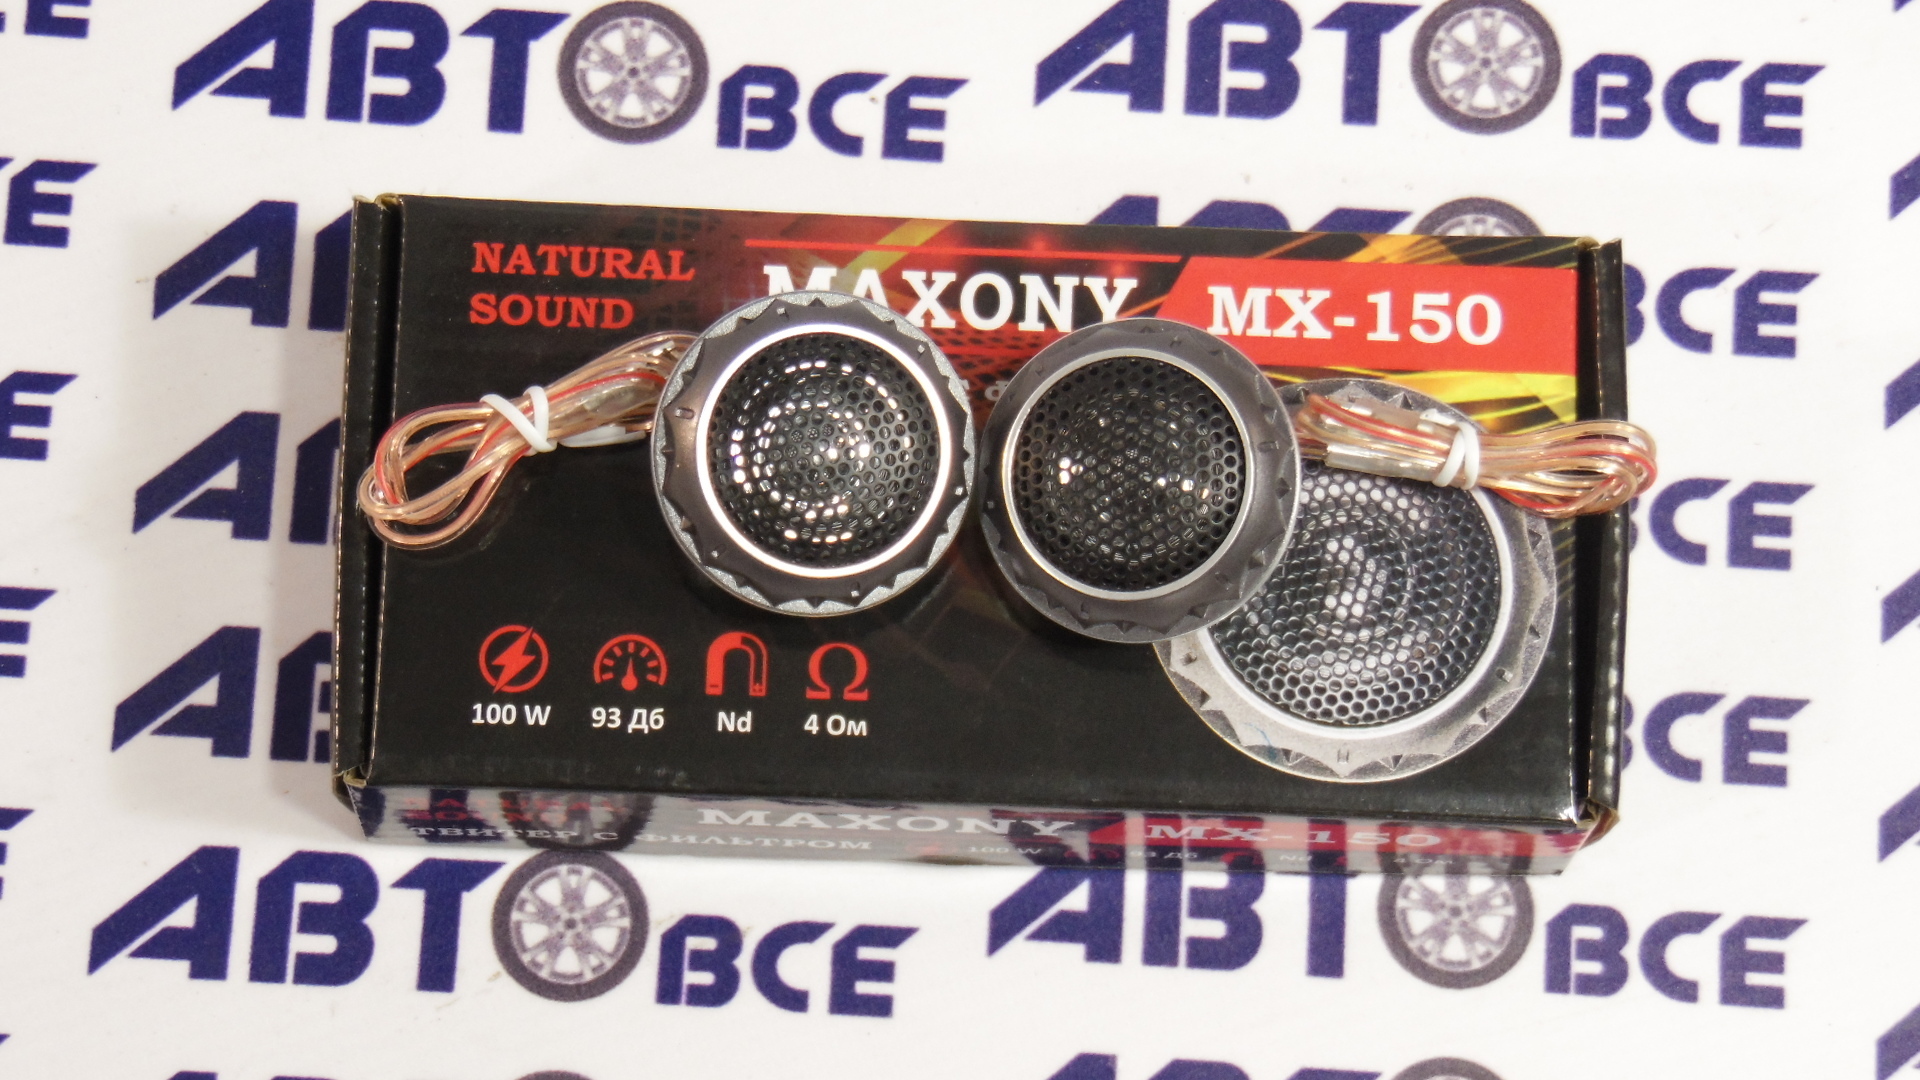 Динамики высокочастотные комплект 2шт (пищалка) TWEETER MX150 MAXONY